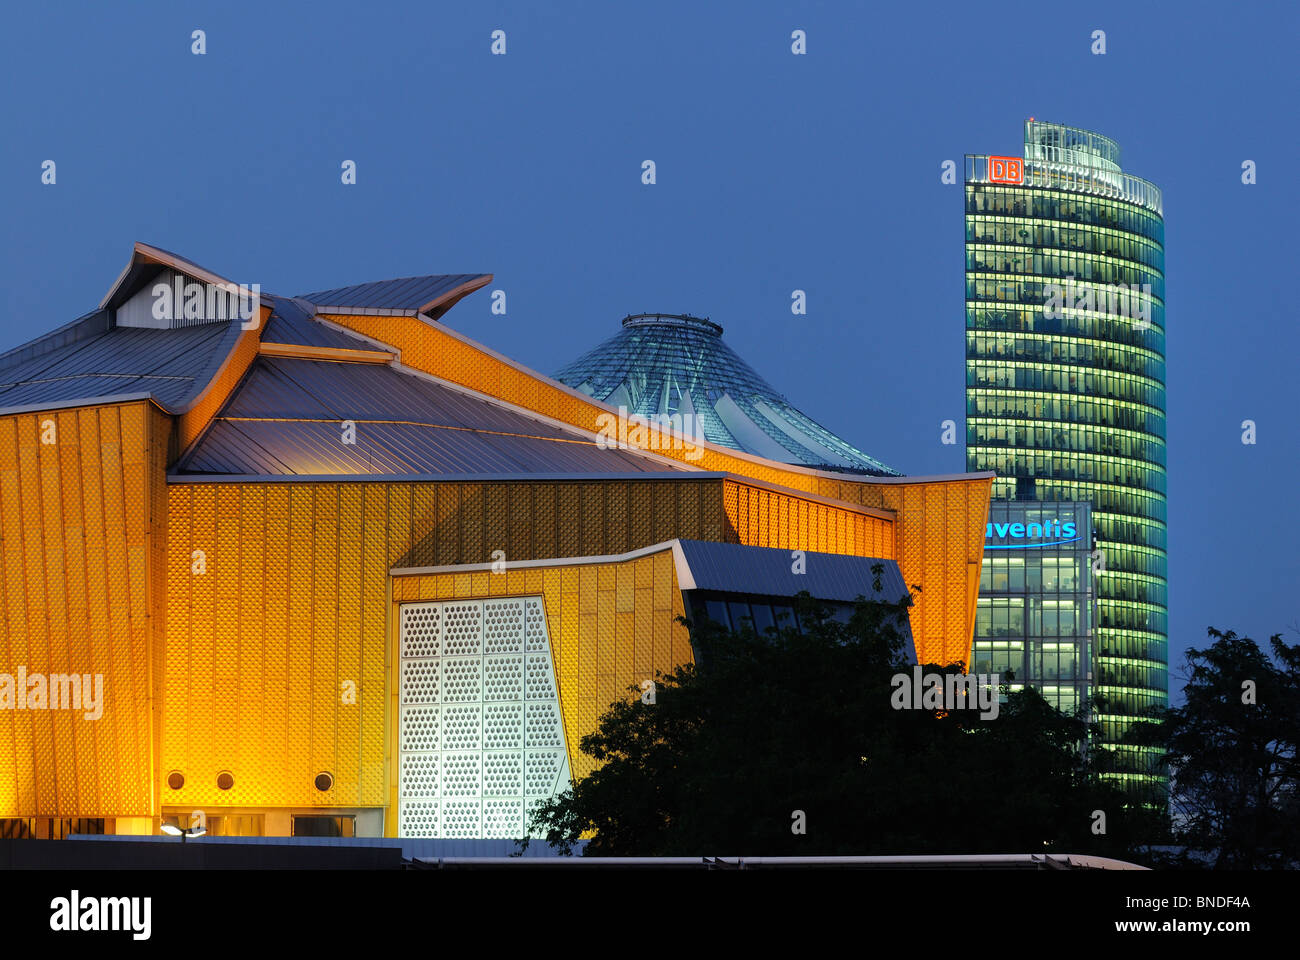 Kammermusiksaal der Philharmonie, Sony Center und DB-Tower am Potsdamer Platz, Tiergarten Bezirk, Berlin, Deutschland. Stockfoto